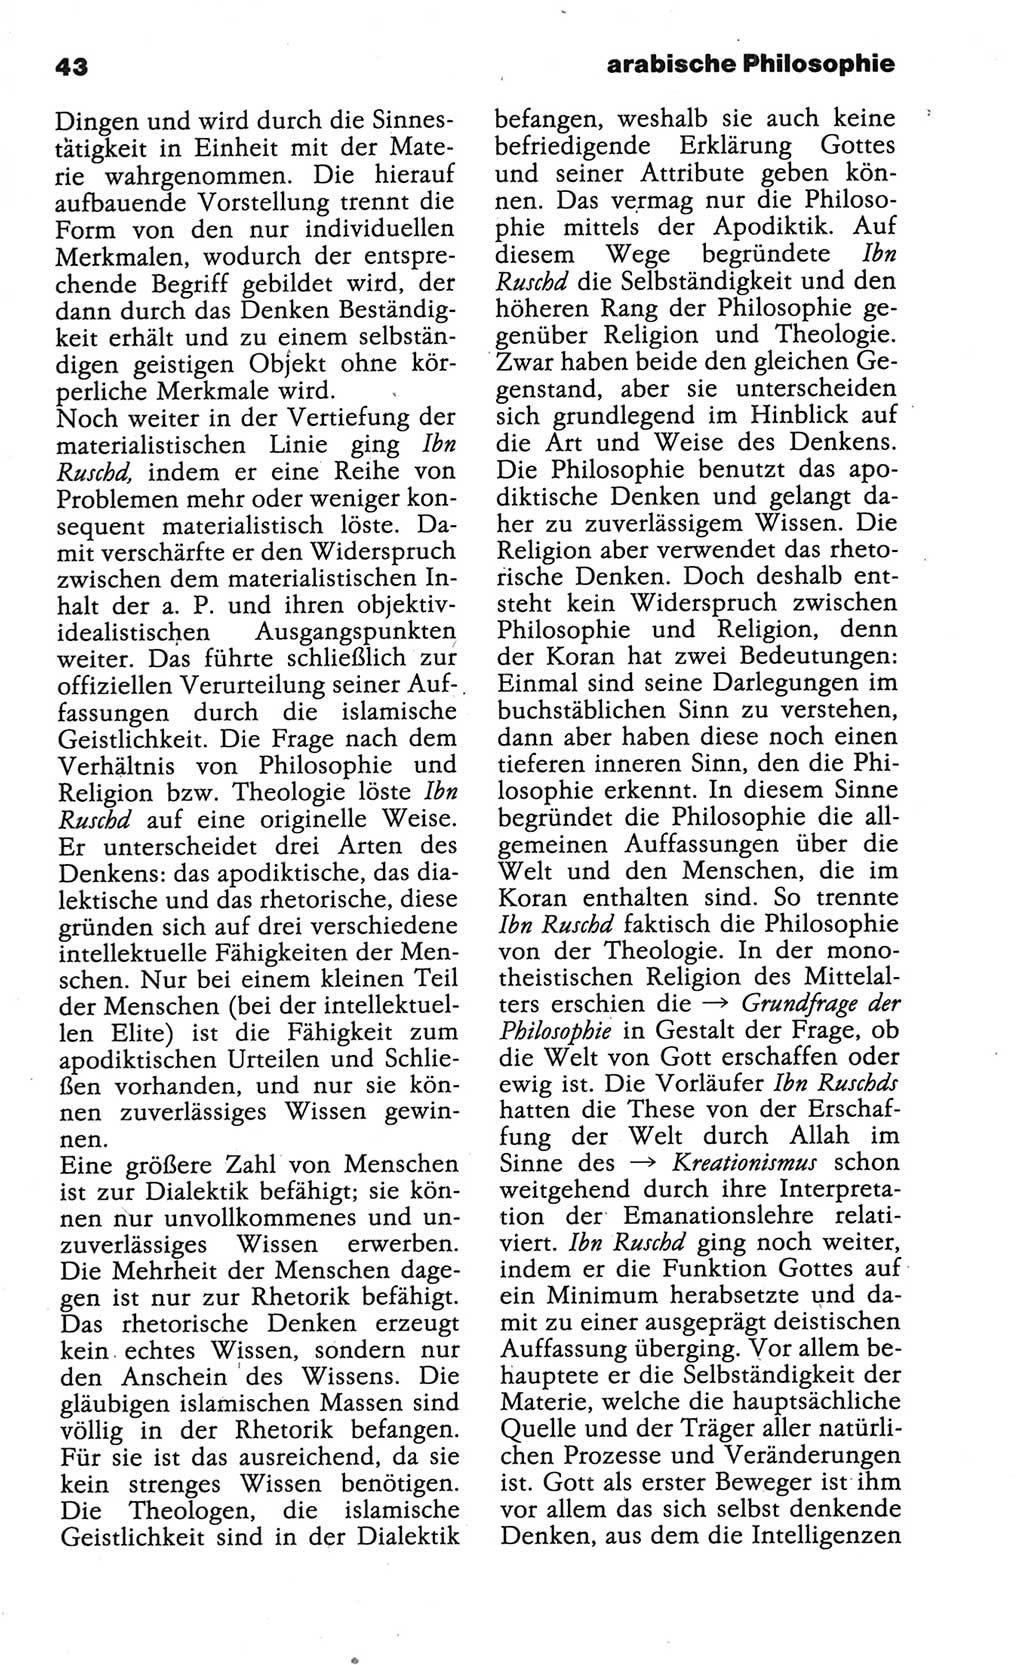 Wörterbuch der marxistisch-leninistischen Philosophie [Deutsche Demokratische Republik (DDR)] 1986, Seite 43 (Wb. ML Phil. DDR 1986, S. 43)